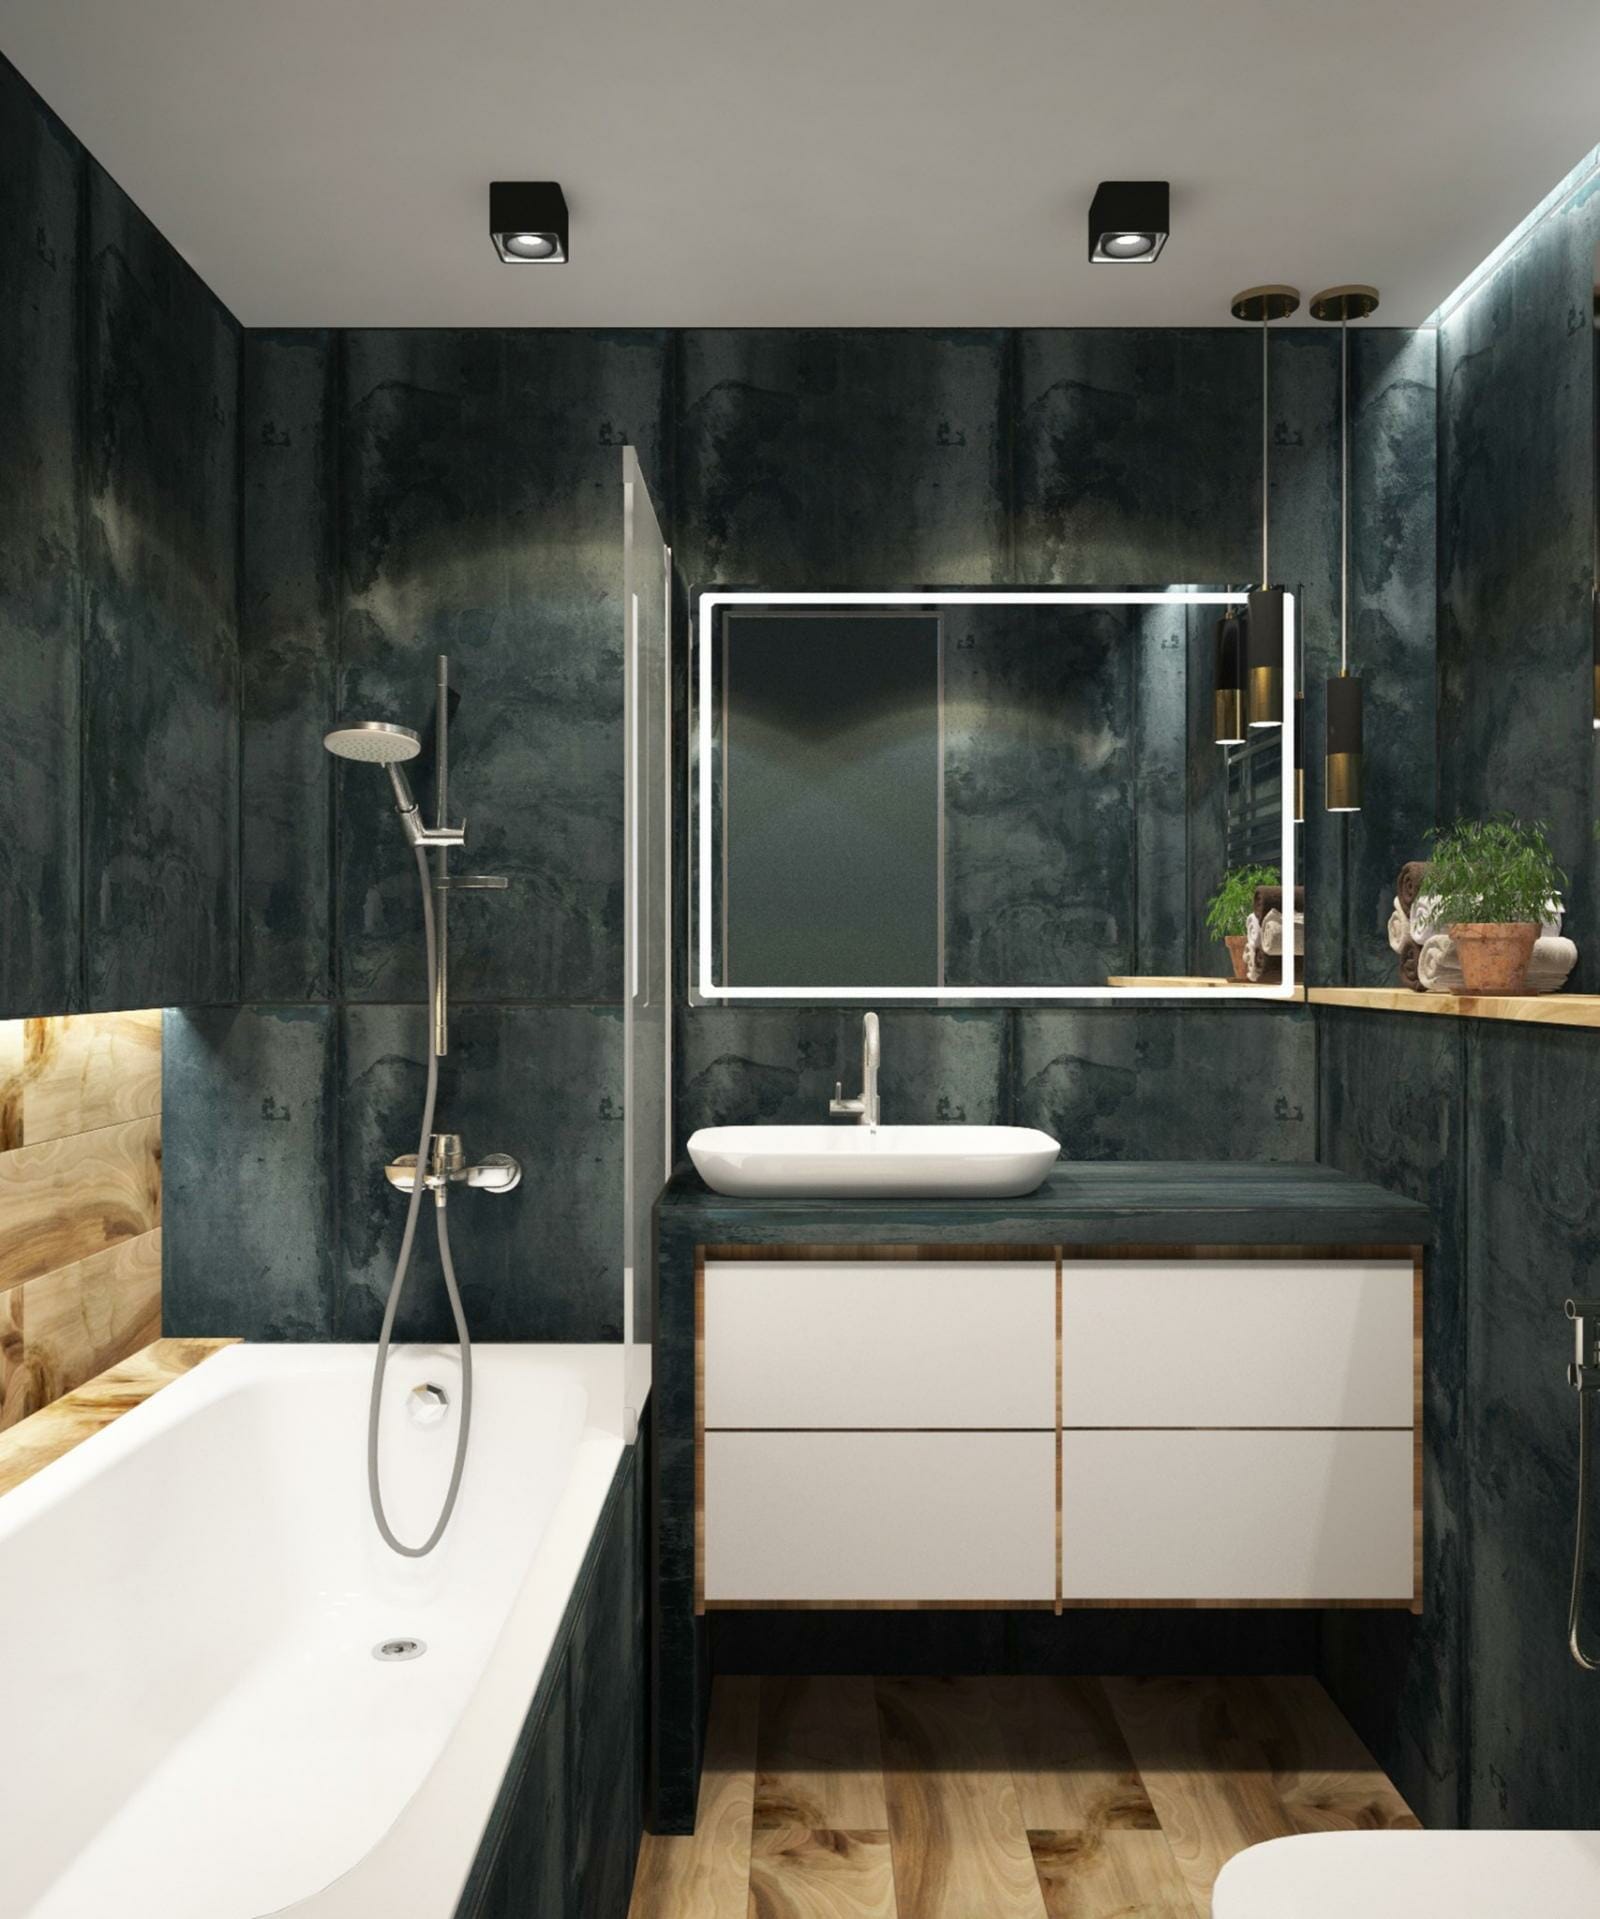 Hình ảnh phòng tắm với những bức tường màu xám tối, bồn tắm màu trắng